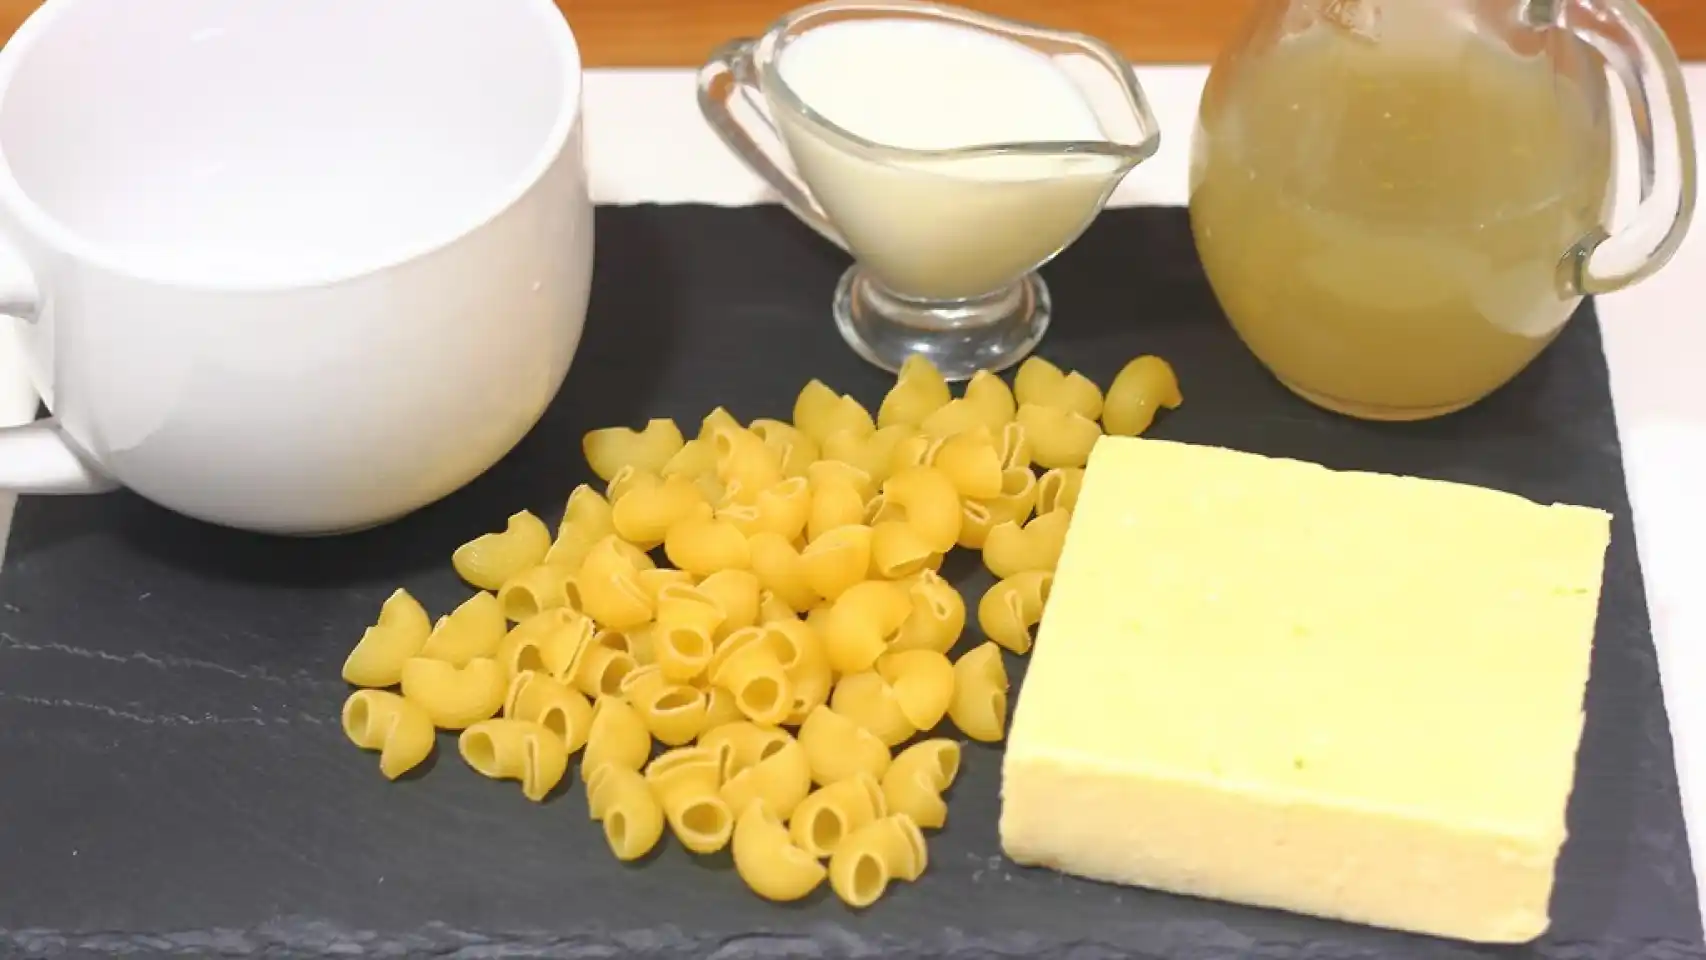 Receta de macarrones con queso en taza al microondas, fácil y lista en menos de 10 minutos